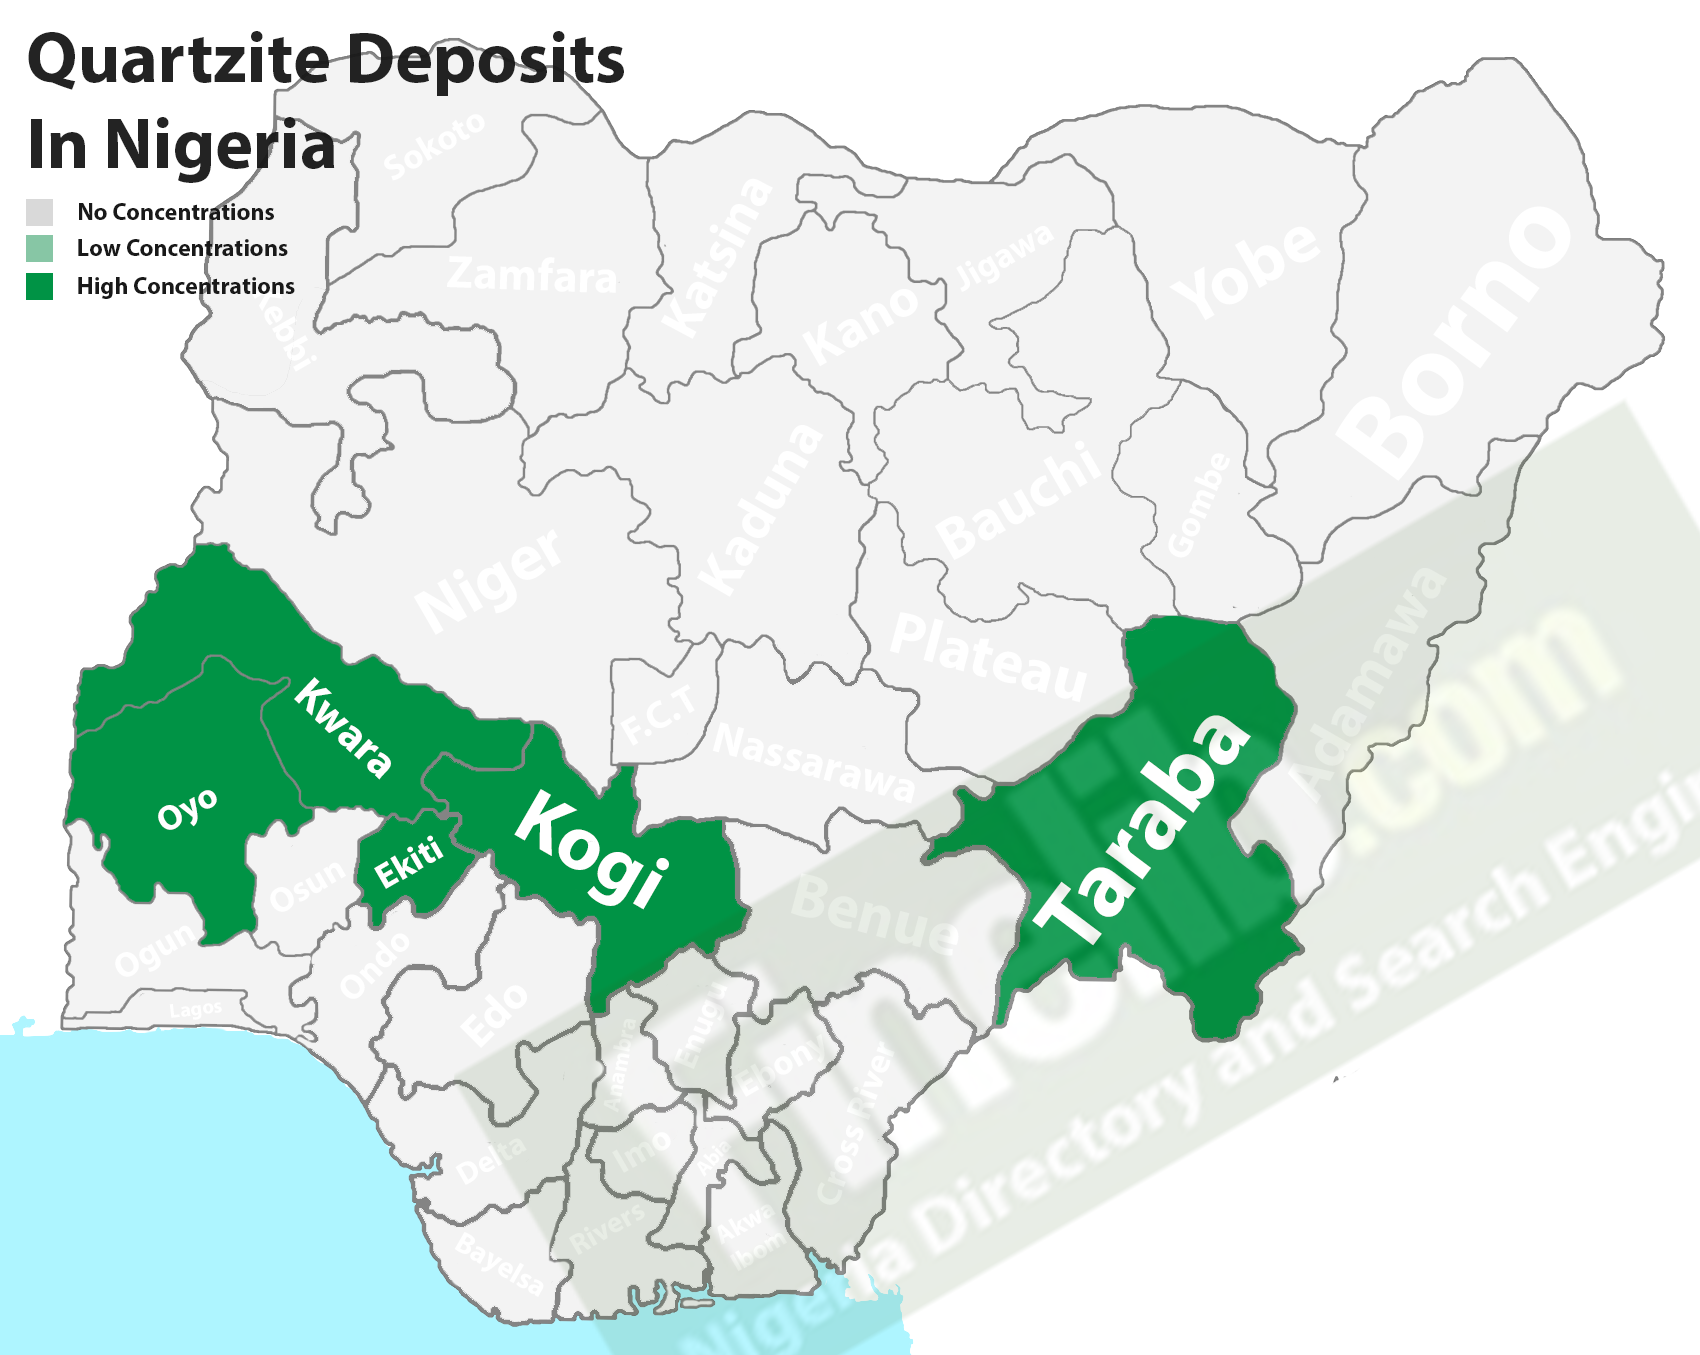 Quartzite deposits in Nigeria